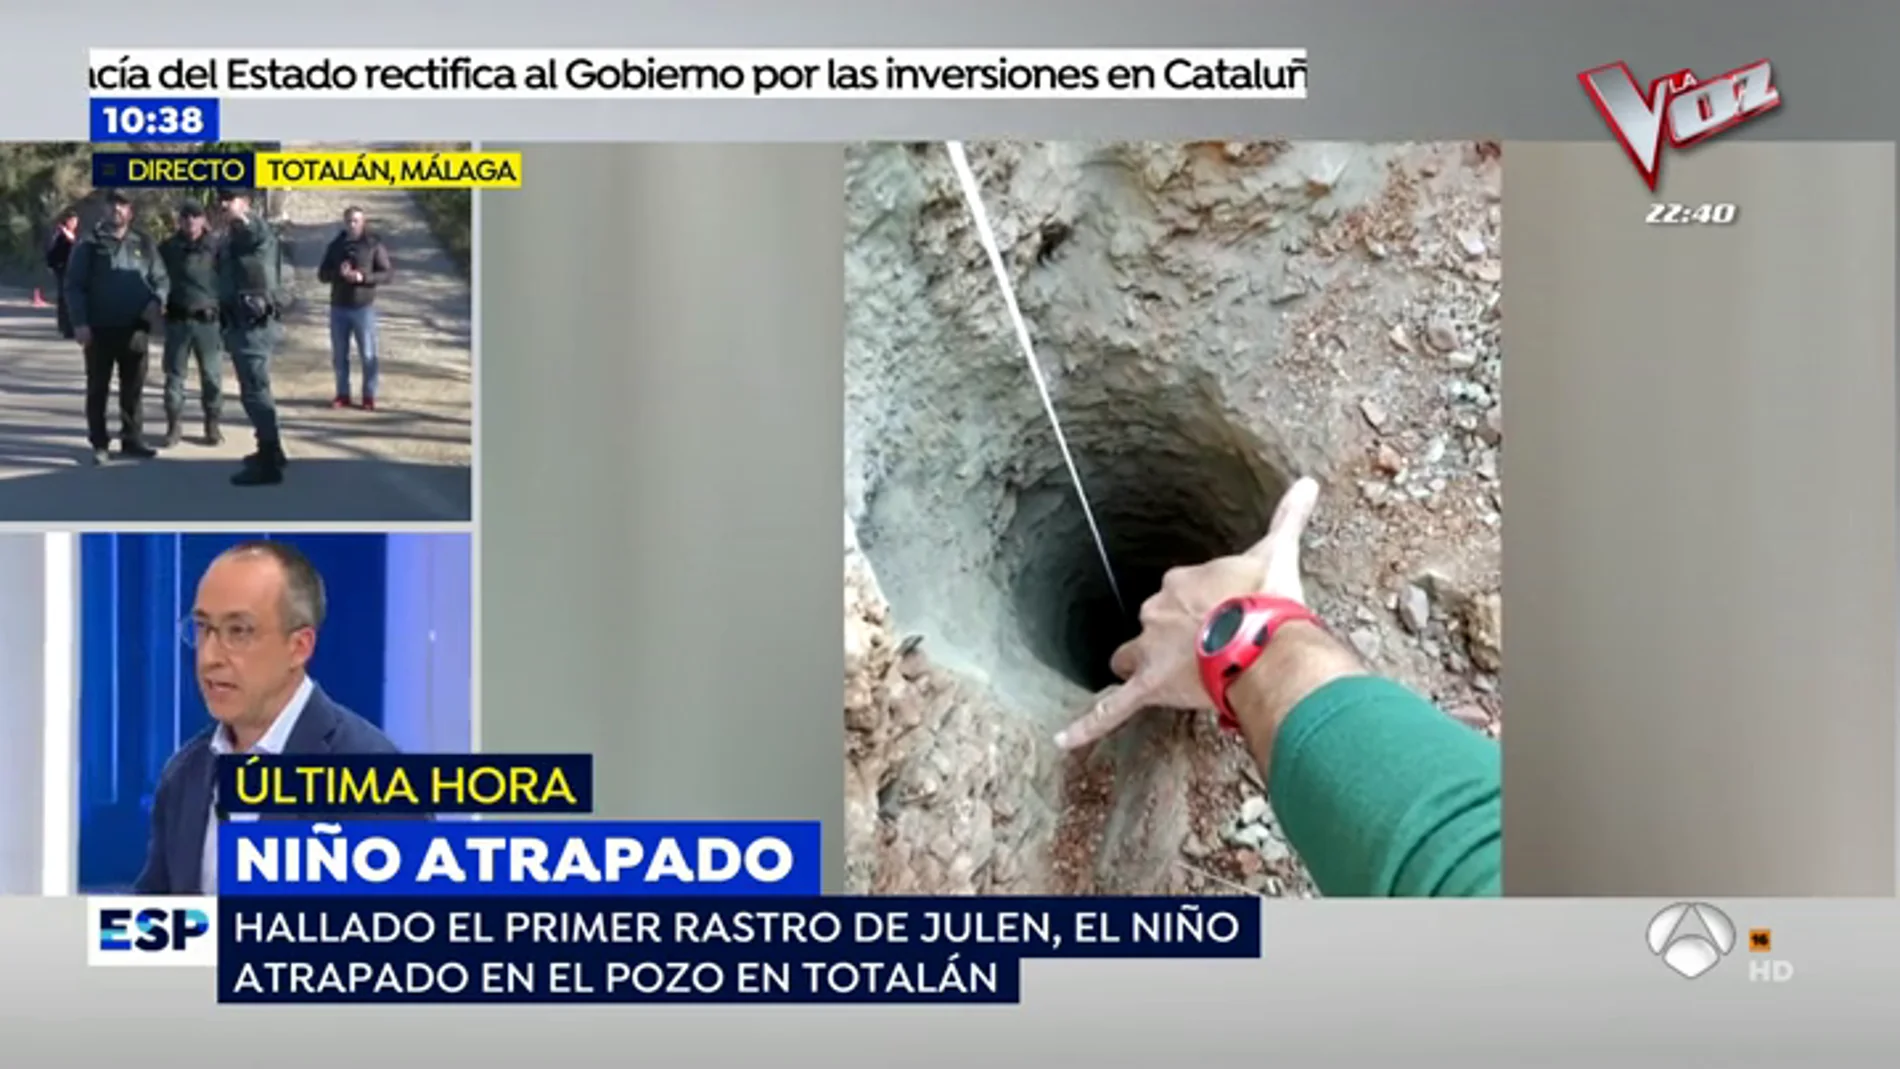 El forense José Antonio Lorente, sobre el niño atrapado en el pozo: "Me sorprende muchísimo que haya podido caer en un agujero tan profundo"